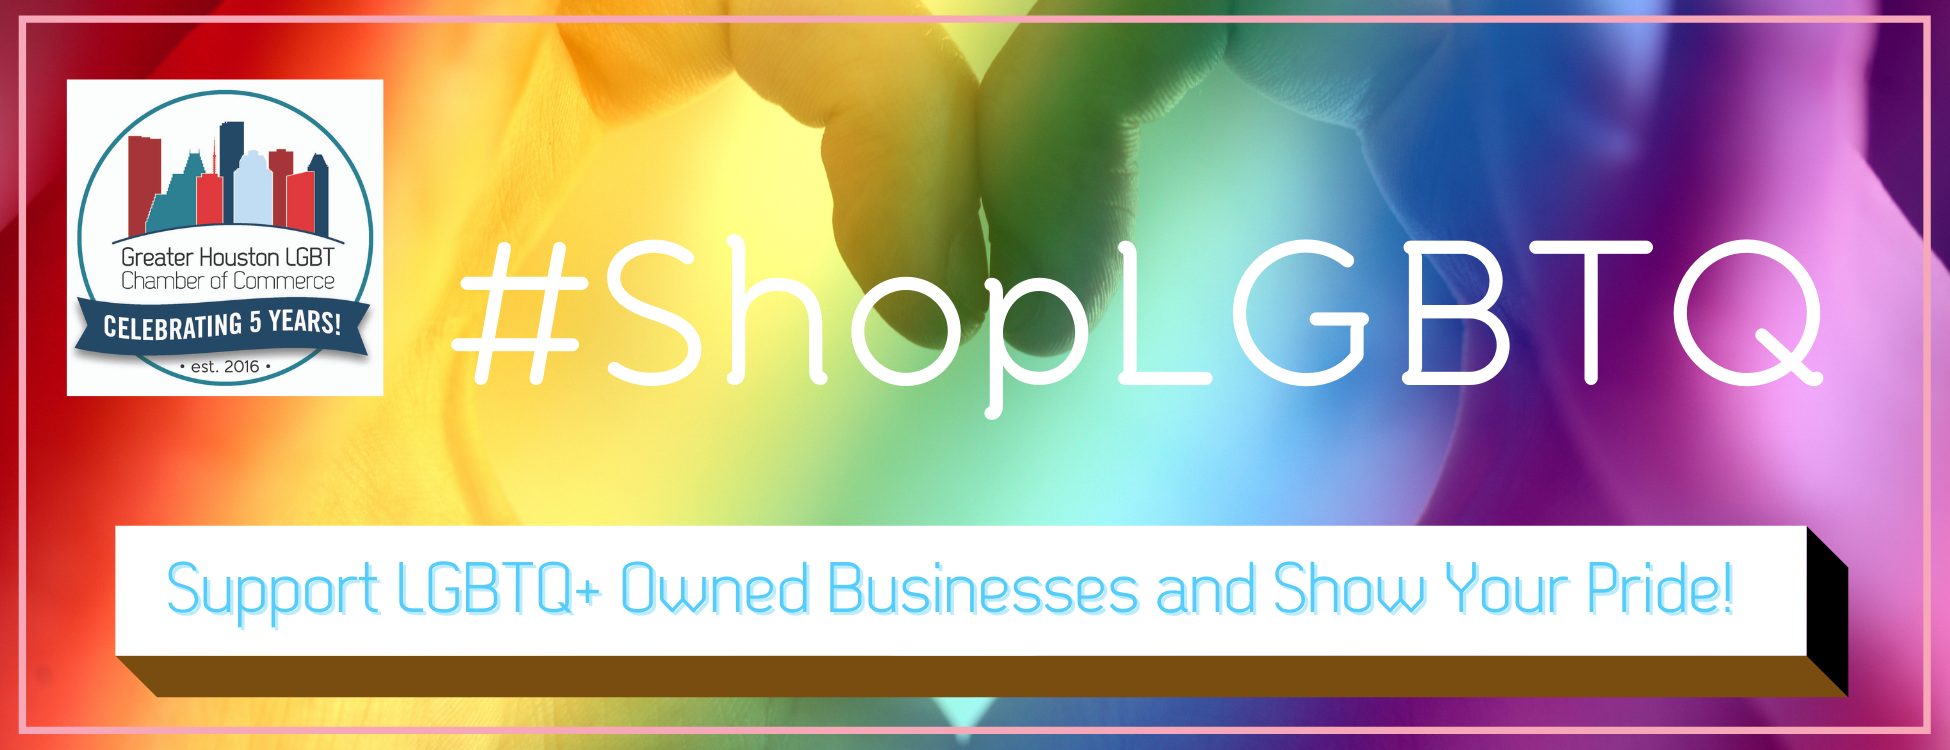 #ShopLGBTQ 5 year Logo - Webpage Header